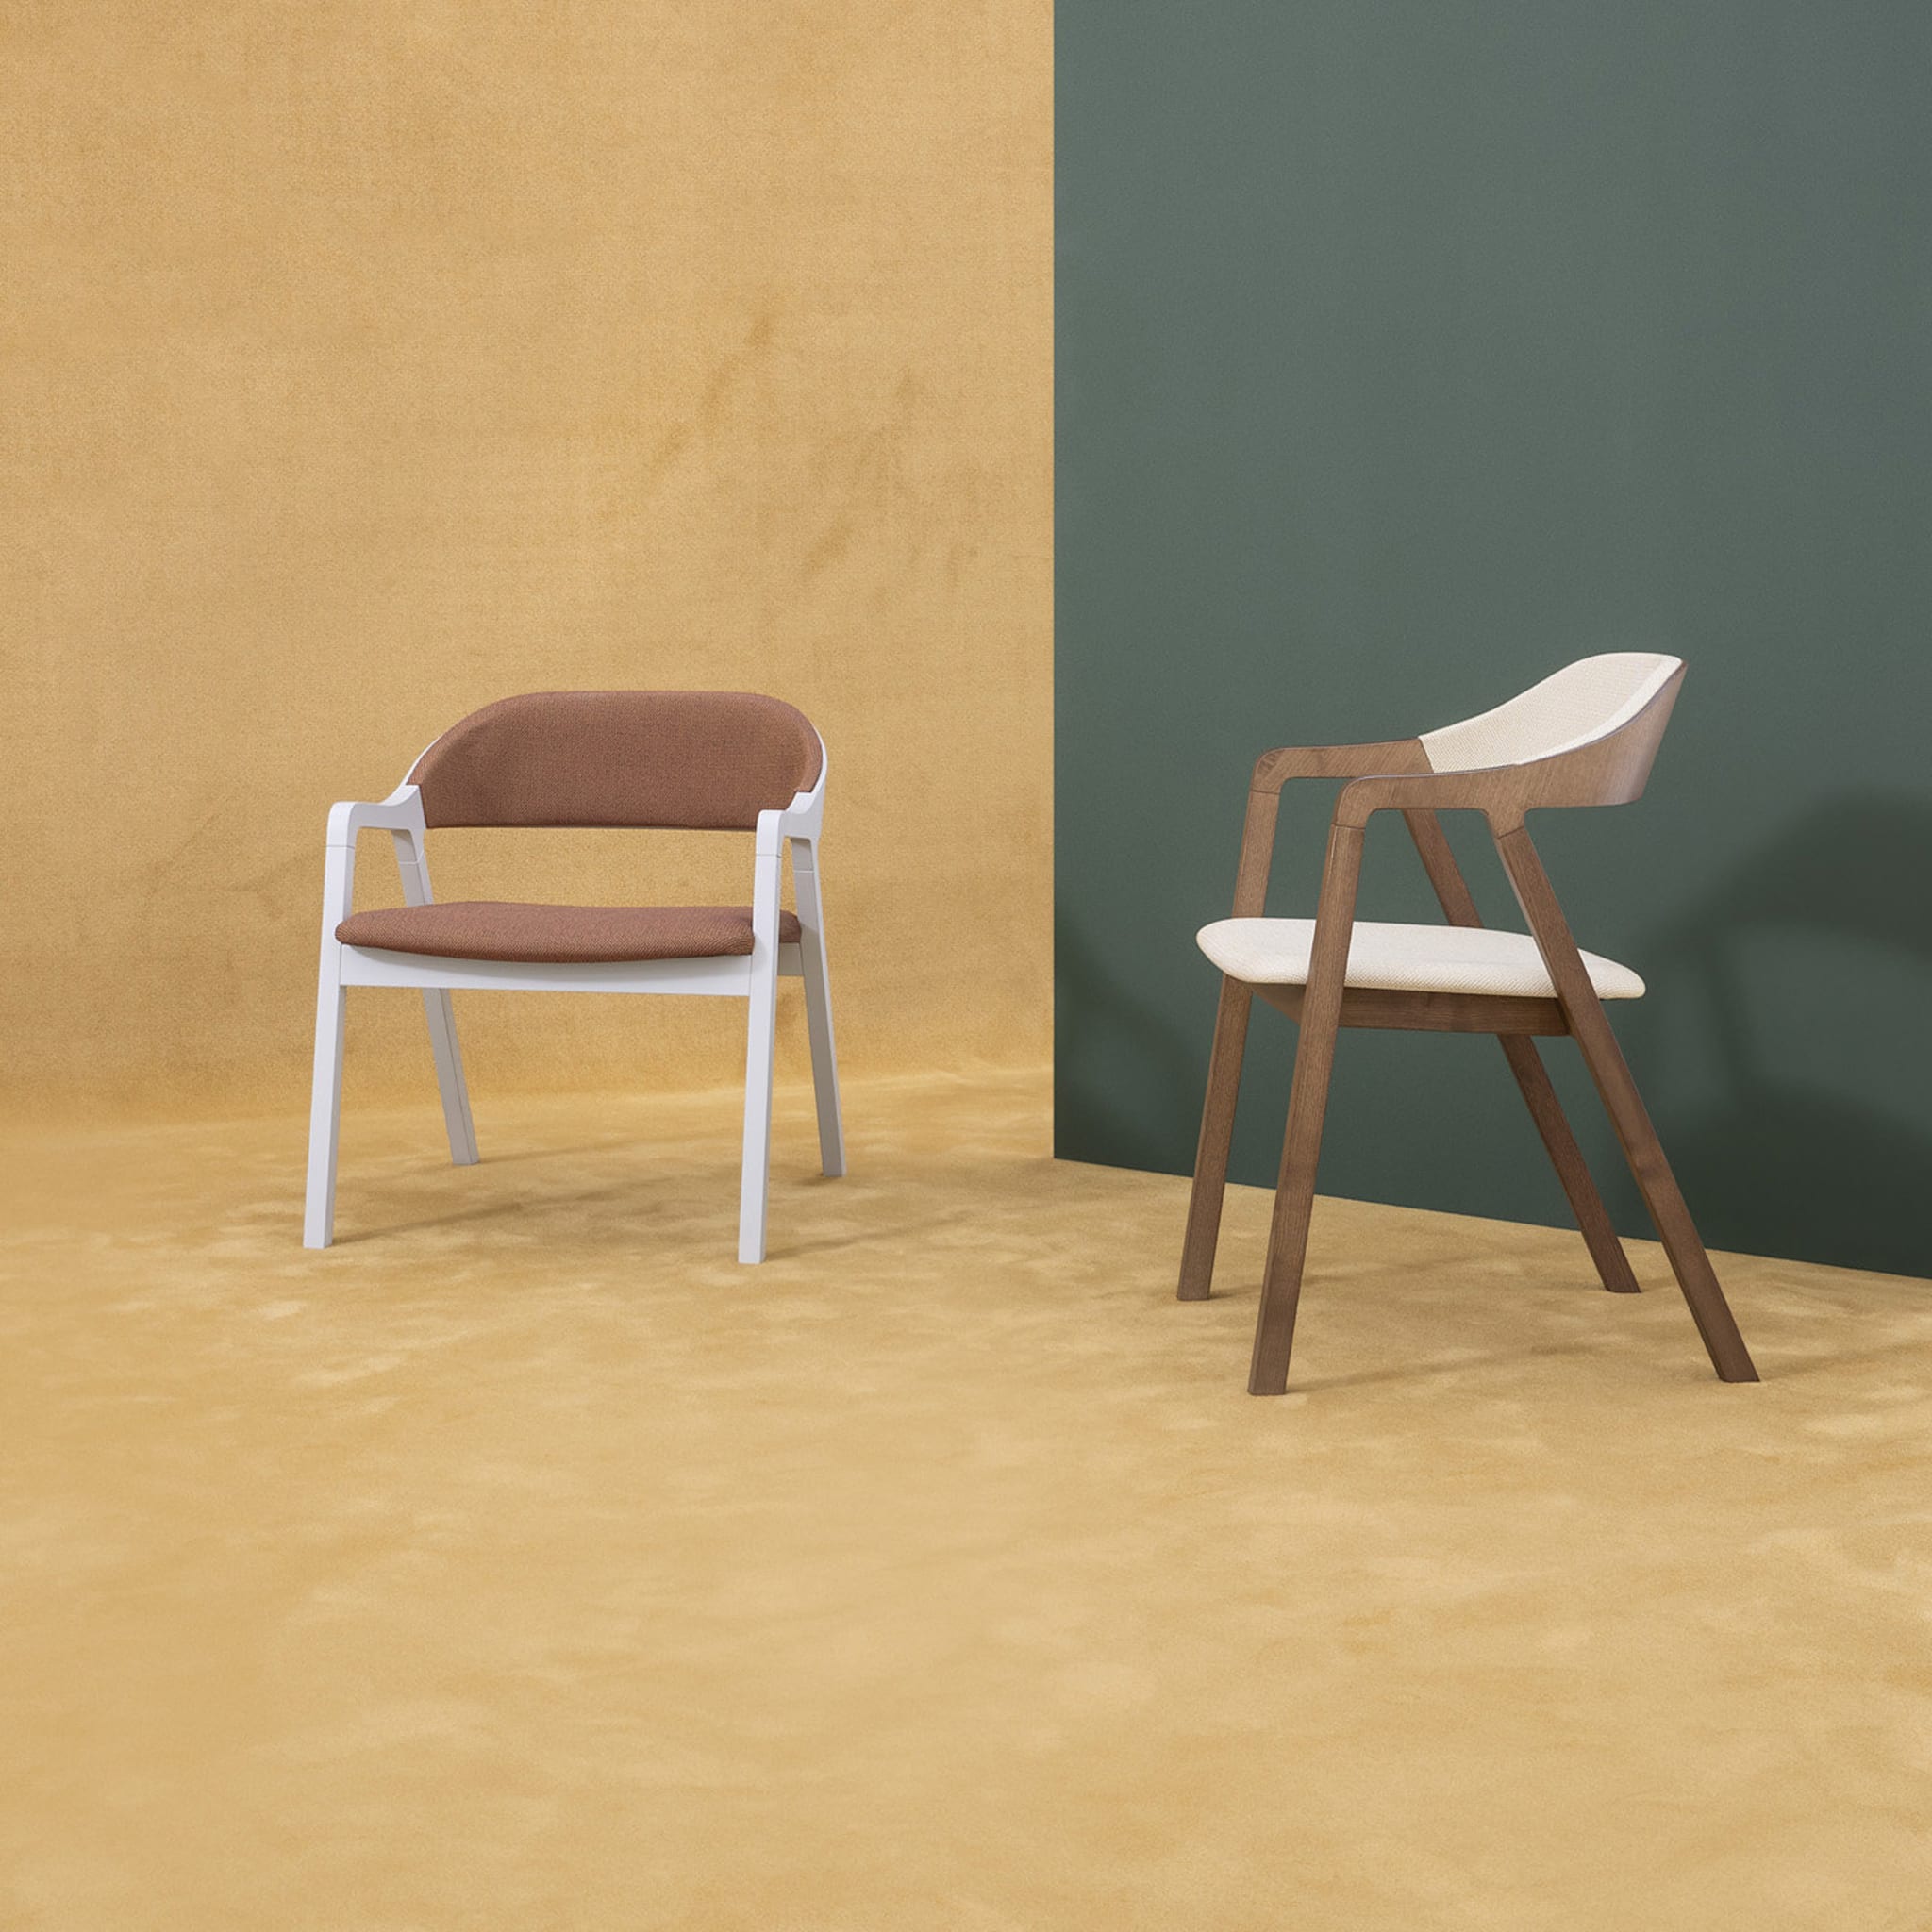 Layer Chair by Michael Geldmacher - Alternative view 4